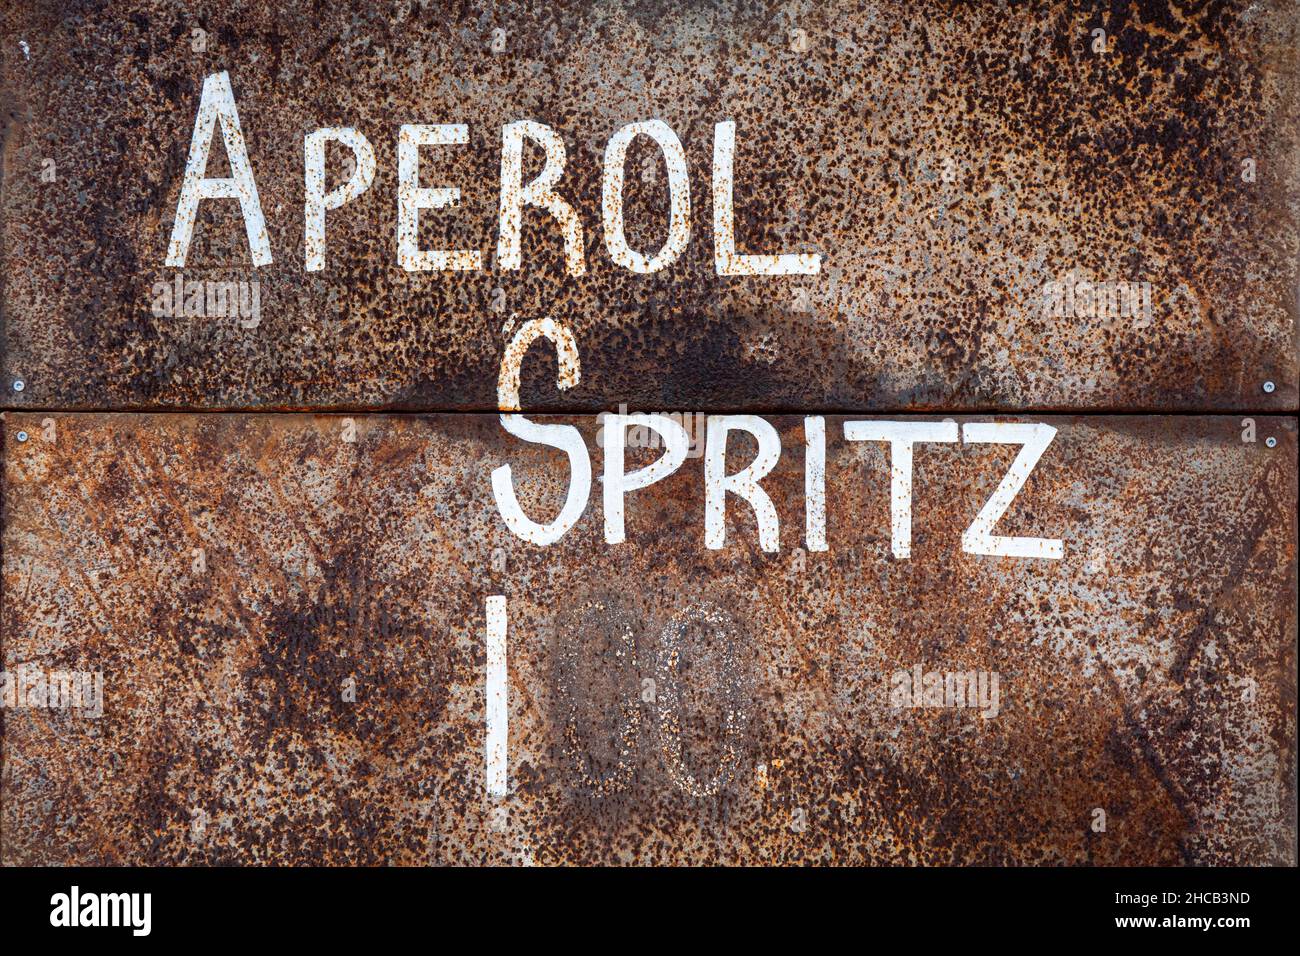 Prix Aperol Spritz.Texte blanc sur une surface rouillée. Banque D'Images